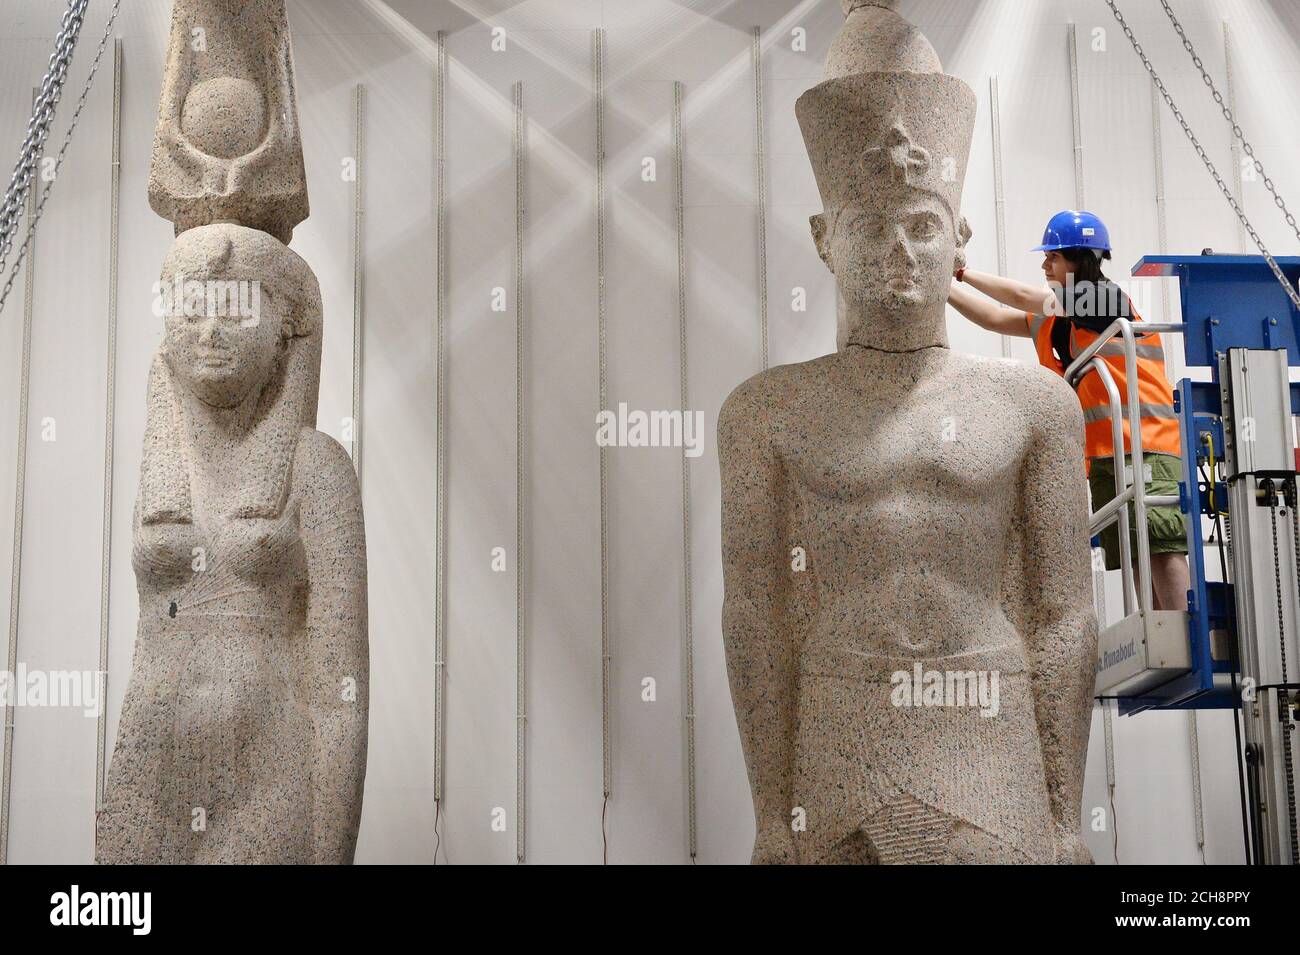 El personal del Museo Británico trabaja para instalar dos estatuas colosales de un rey y una reina, posiblemente del reinado de Ptolomeo II (283-246 AC), pero se retractan más tarde. El rey tiene 5m de altura y la reina tiene 4,9m. Ambos están hechos de granito rosa y fueron descubiertos por Franck Goddio en el sitio de Thonis-Heracleion y formarán parte de la exposición de BP Ciudades hunidas: Los mundos perdidos de Egipto que se extiende del 19 de mayo al 27 de noviembre de 2016 en el Museo Británico en Londres. Foto de stock